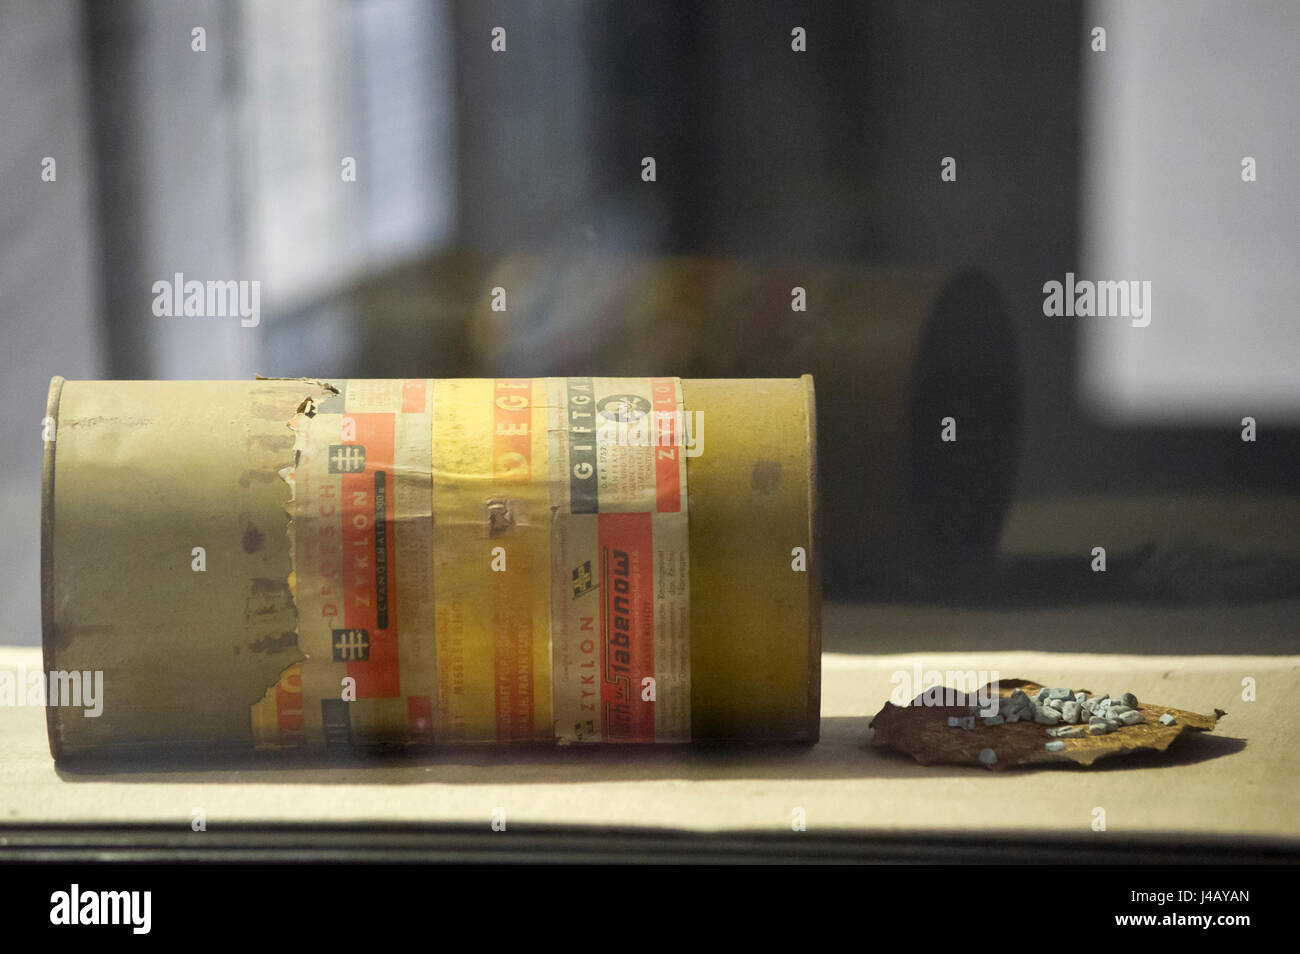 Un può di Zyklon B gas usato per uccidere il popolo ebraico in camere a gas nella Germania nazista campi di sterminio hanno mostrato il percorso espositivo del Museo di Stutthof in Foto Stock